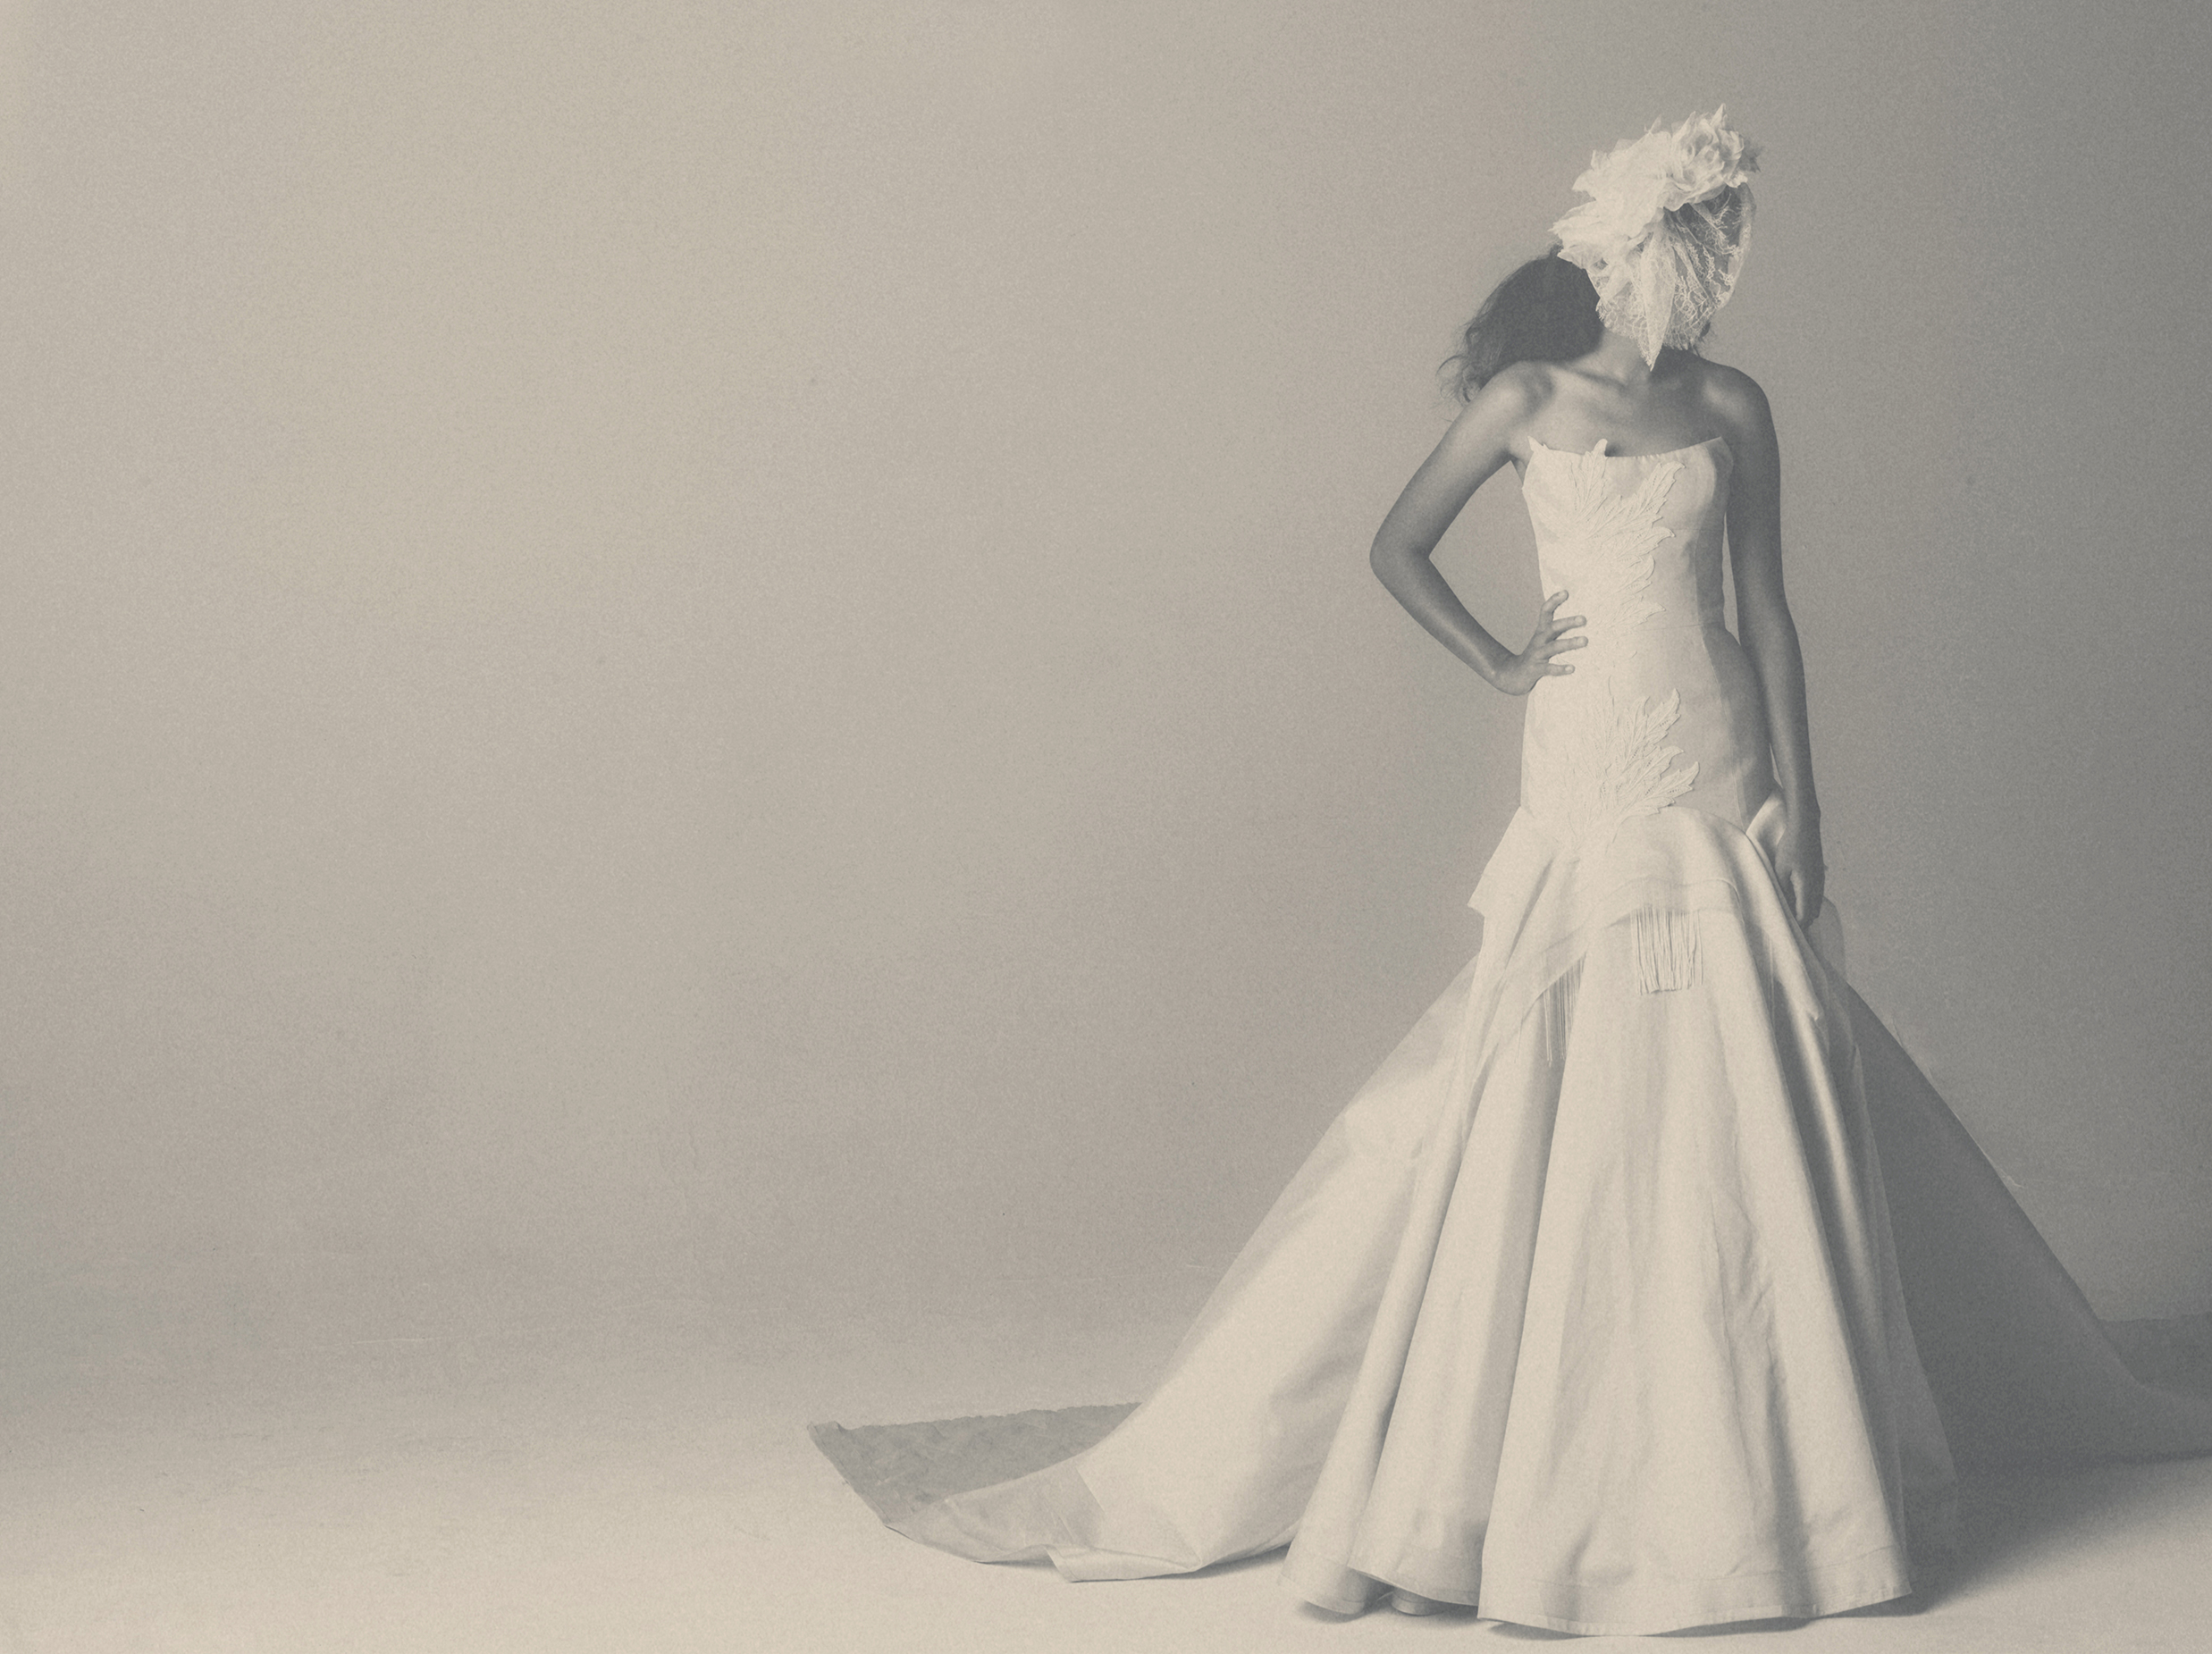 Glamorous Oved Cohen Evening Dresses 2014 - Be Modish | Evening dresses,  Black wedding dresses, Prom dresses